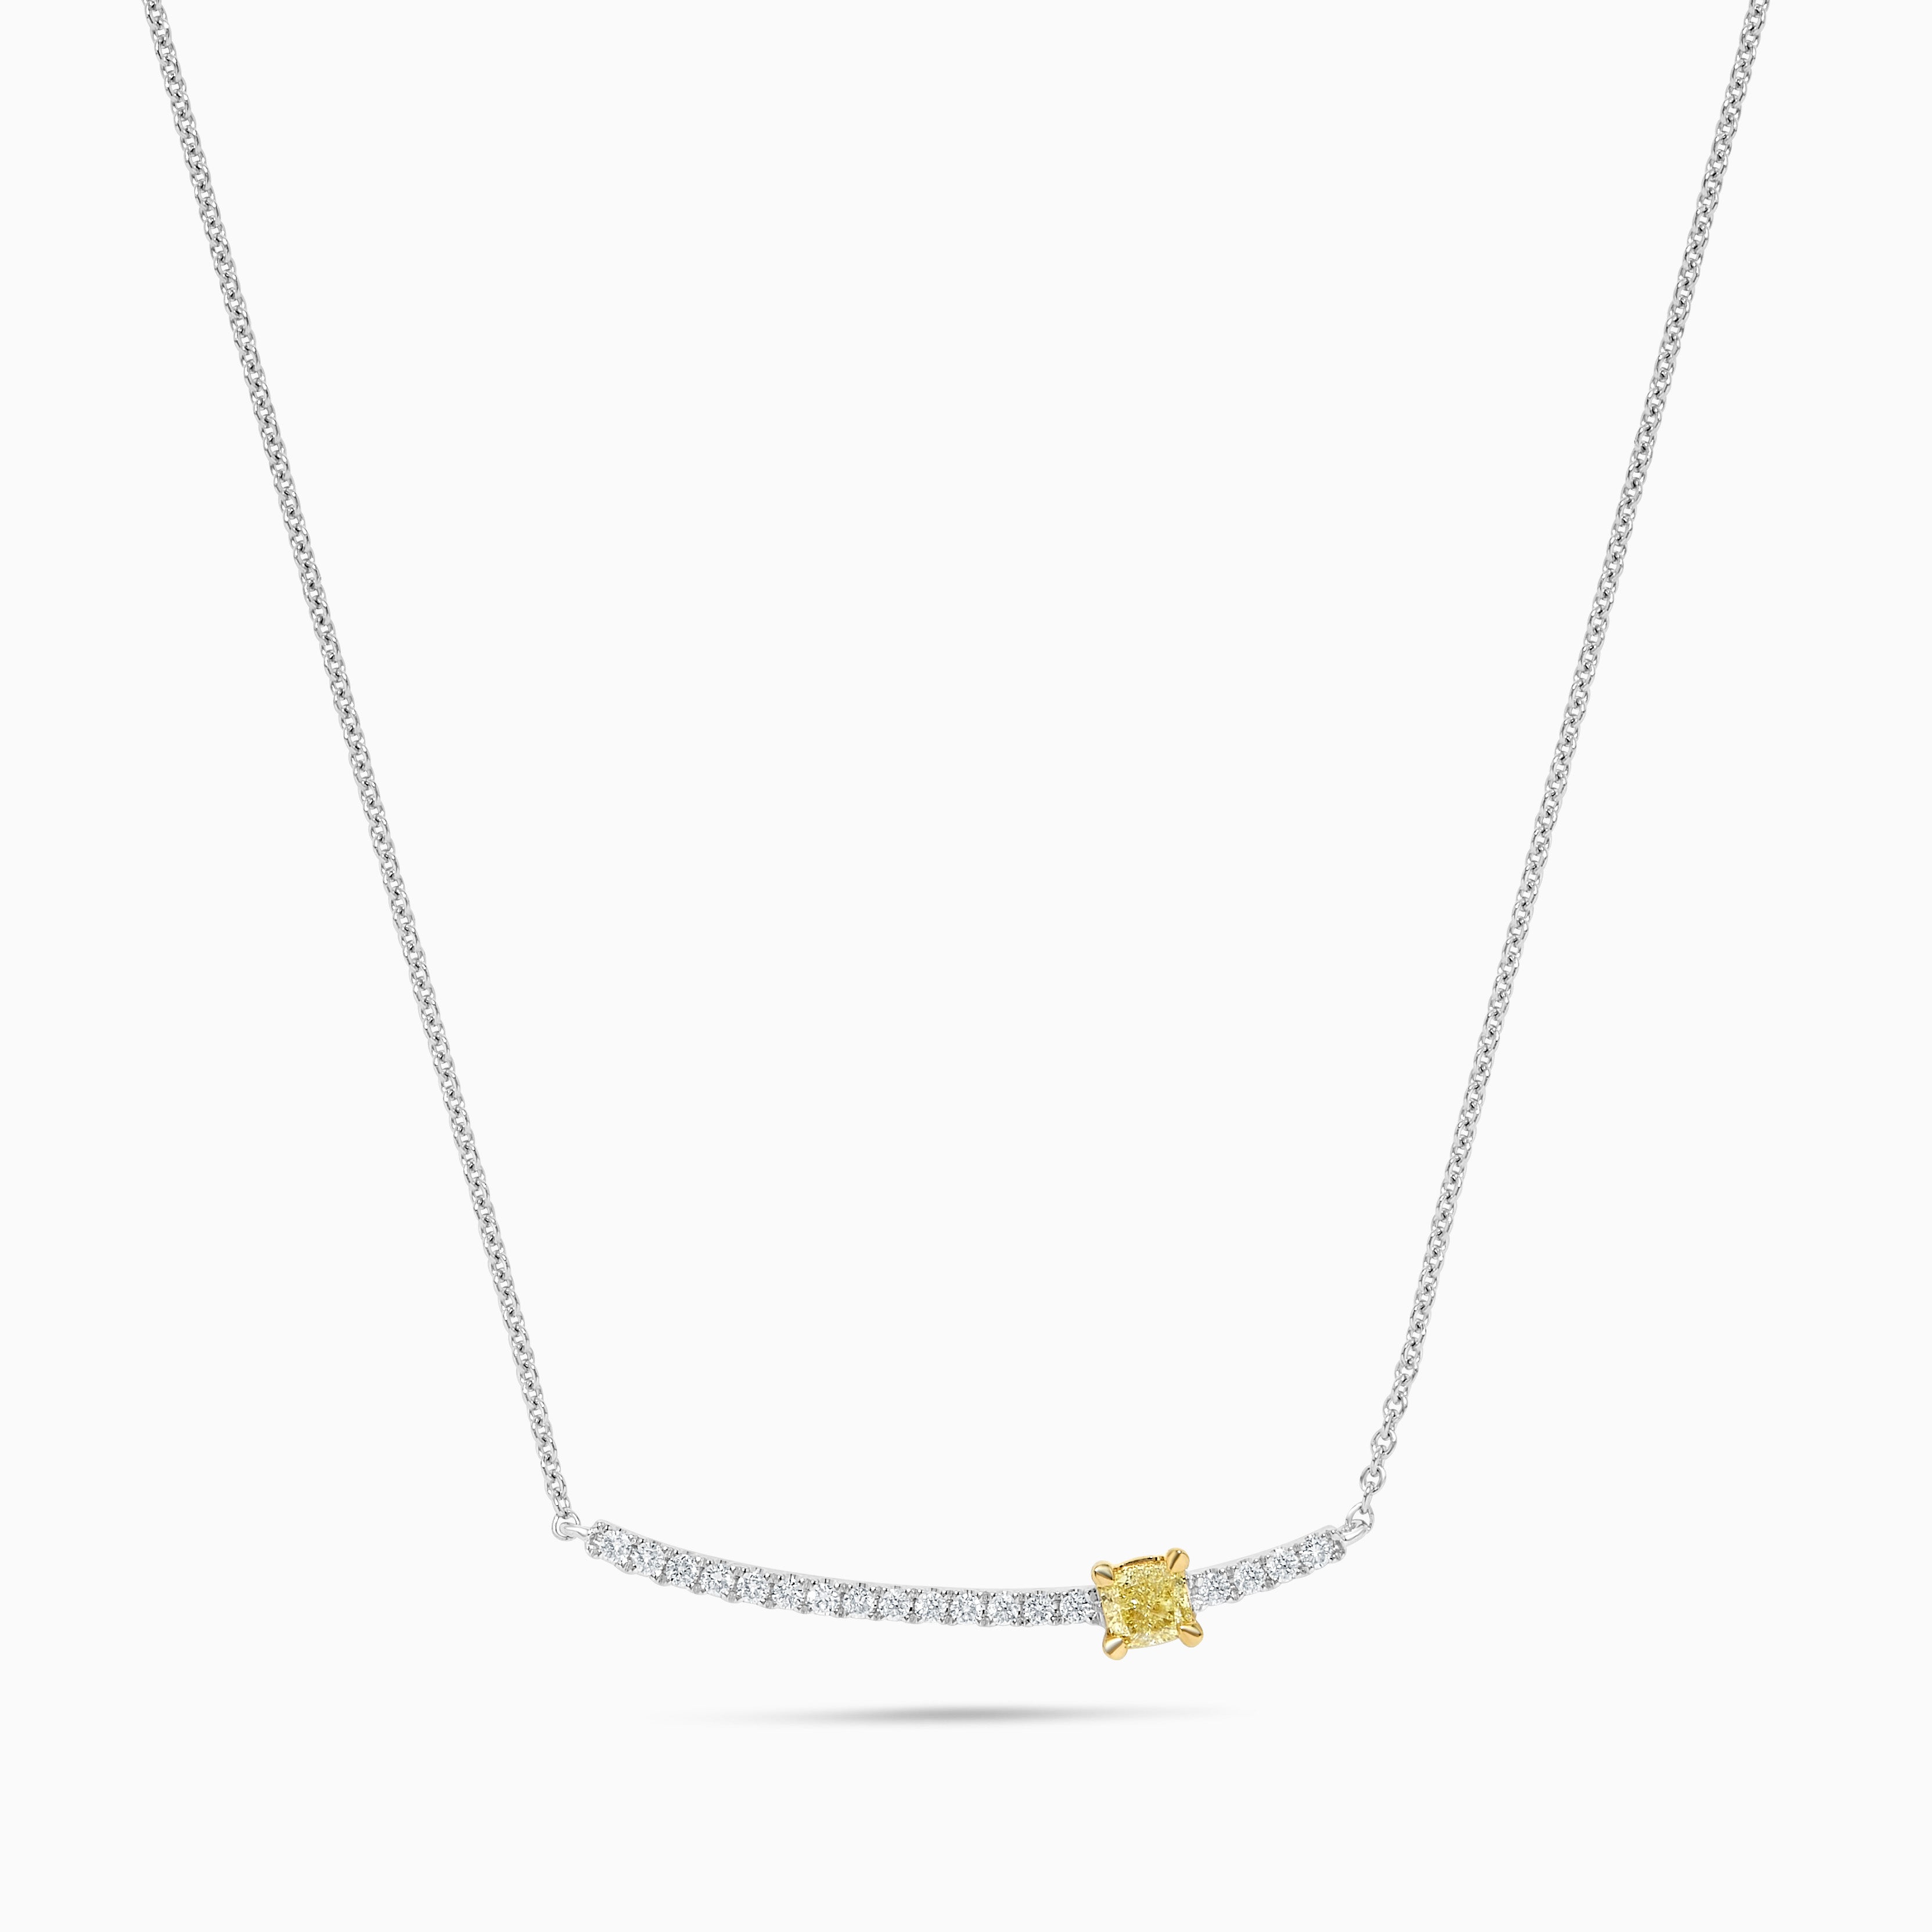 Natural Yellow Cushion Diamond .37 Carat TW Gold Drop Necklace